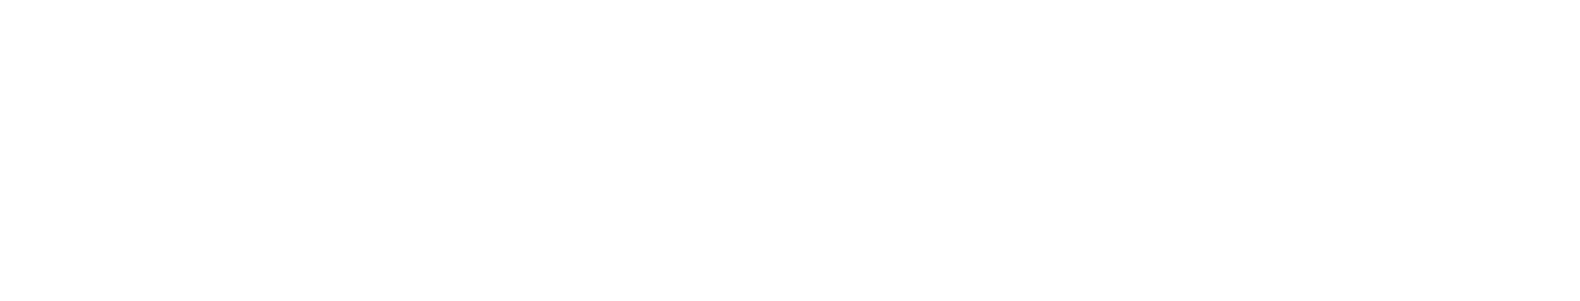 Fluent logo large for dark backgrounds (transparent PNG)